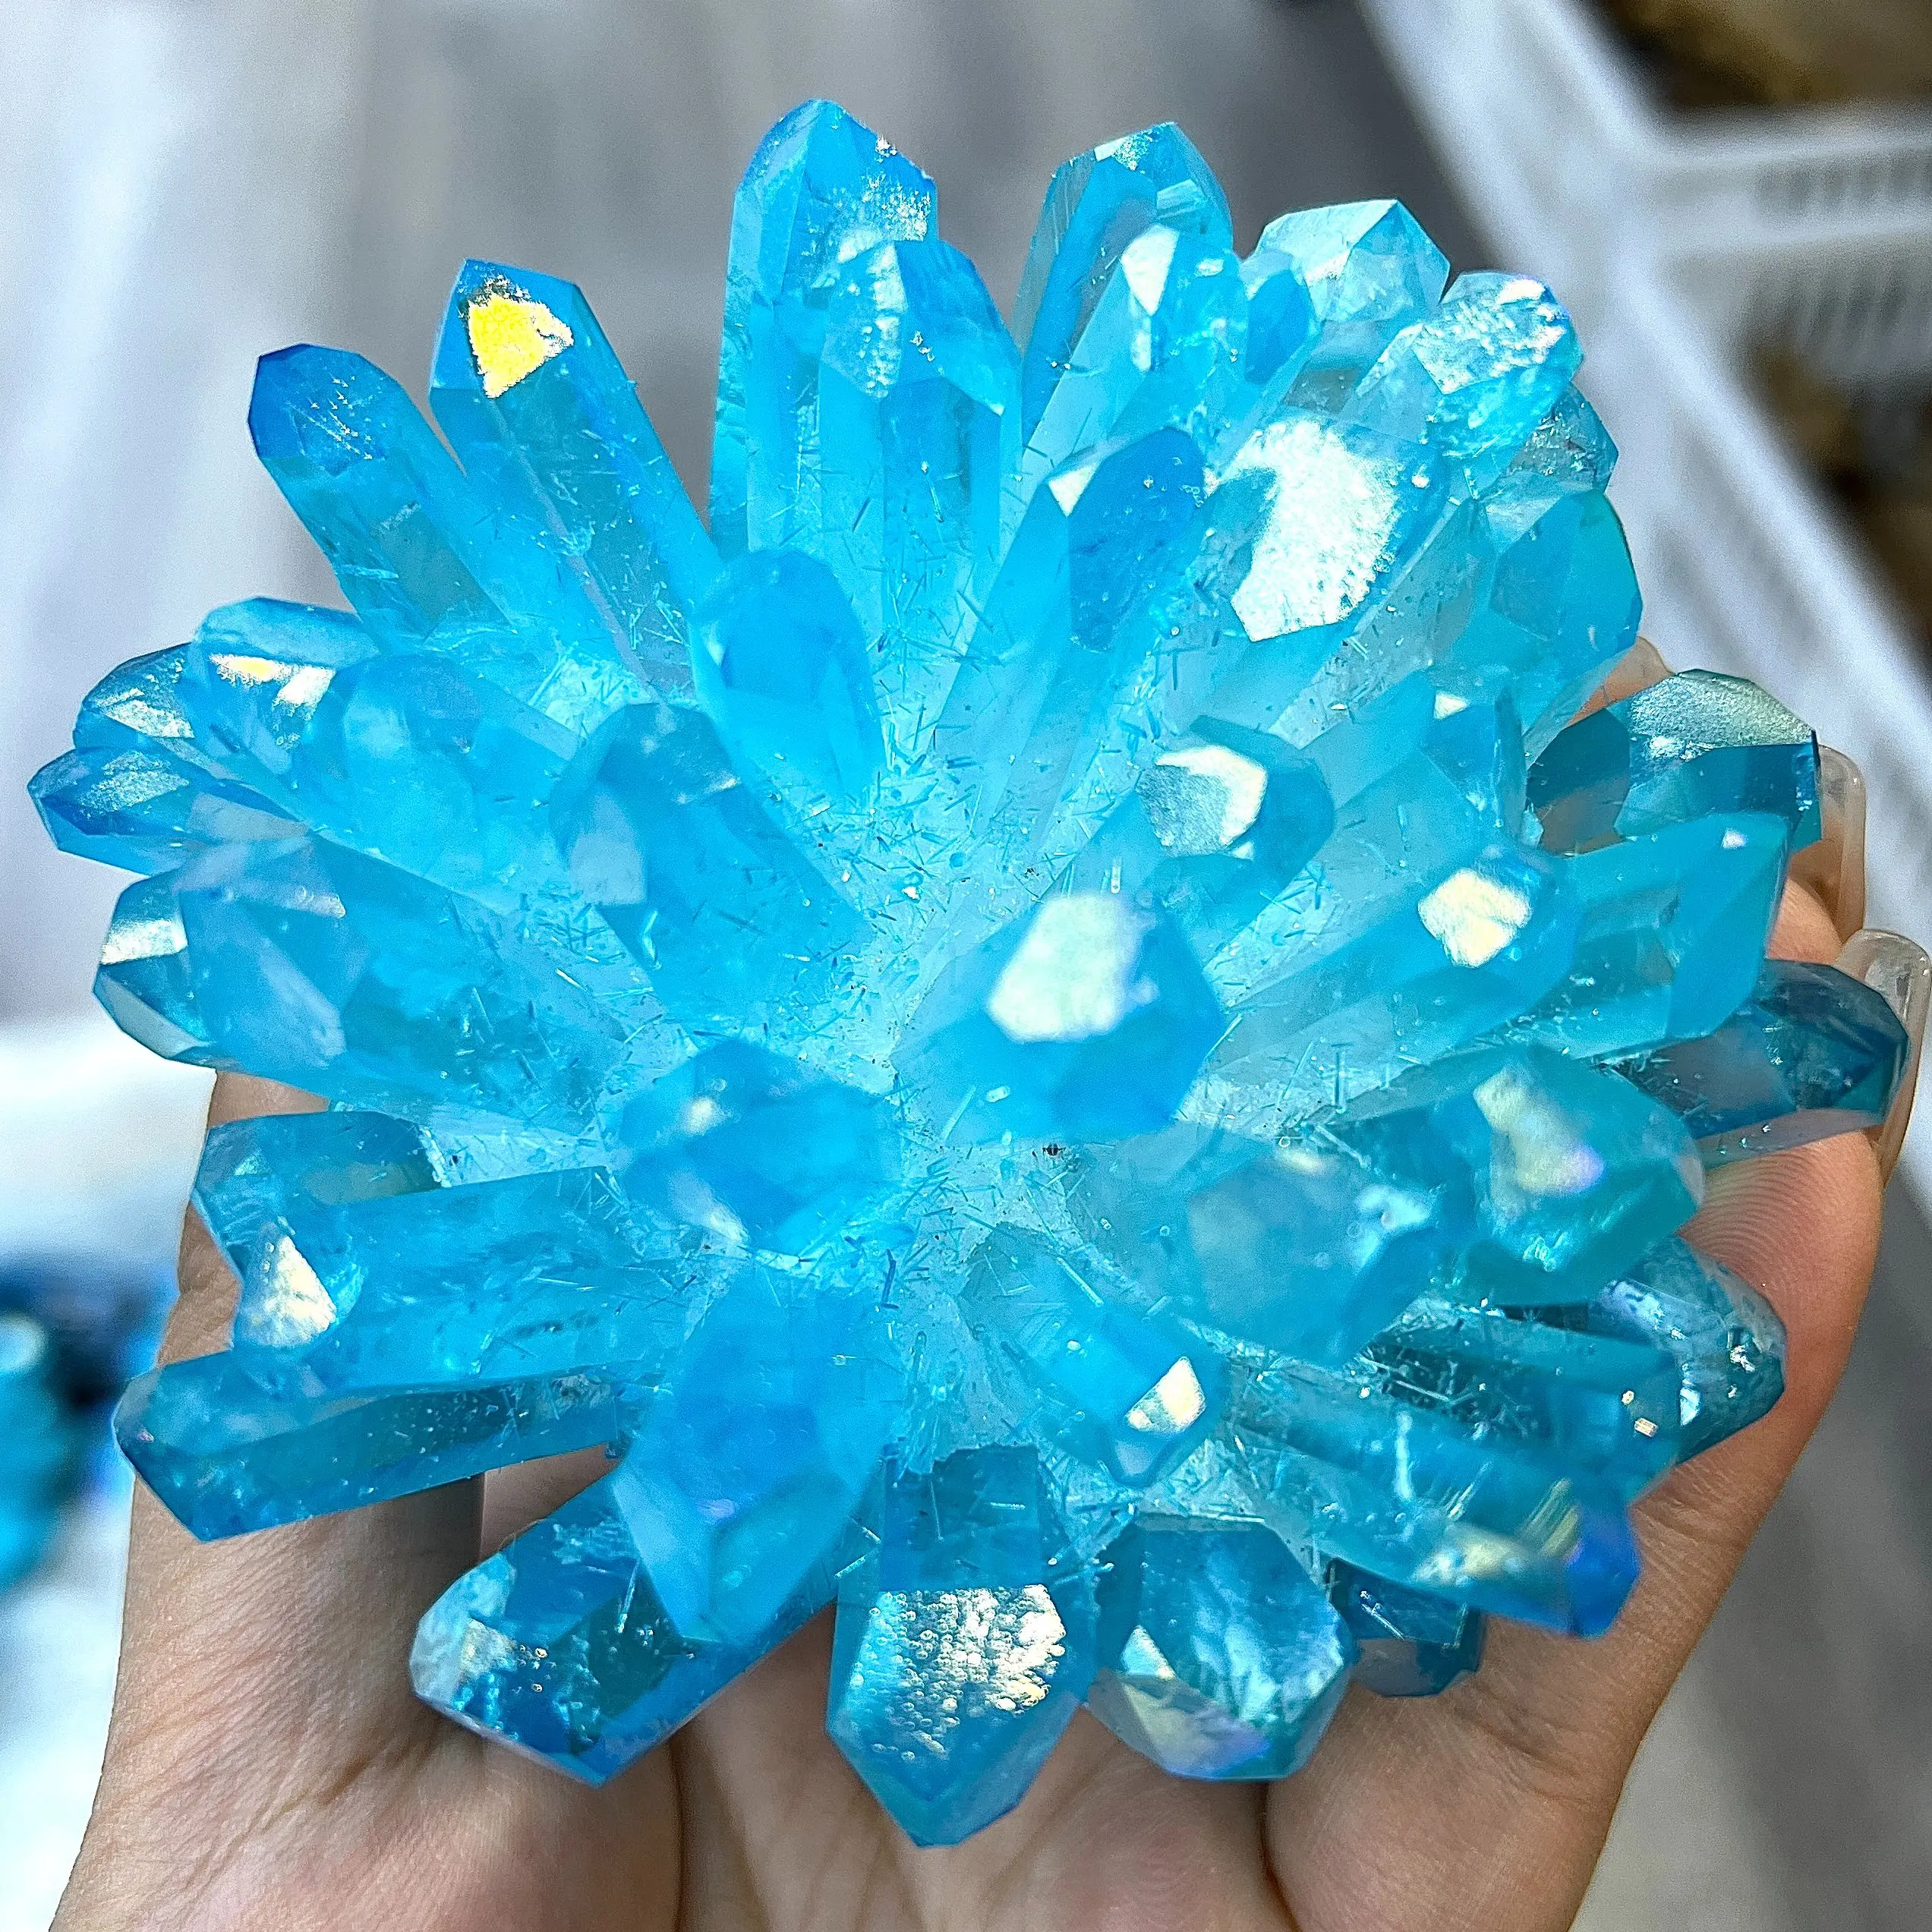 

New Find Blue Phantom Quartz Crystal Cluster Mineral Specimen Healing Specimen Home Decoration